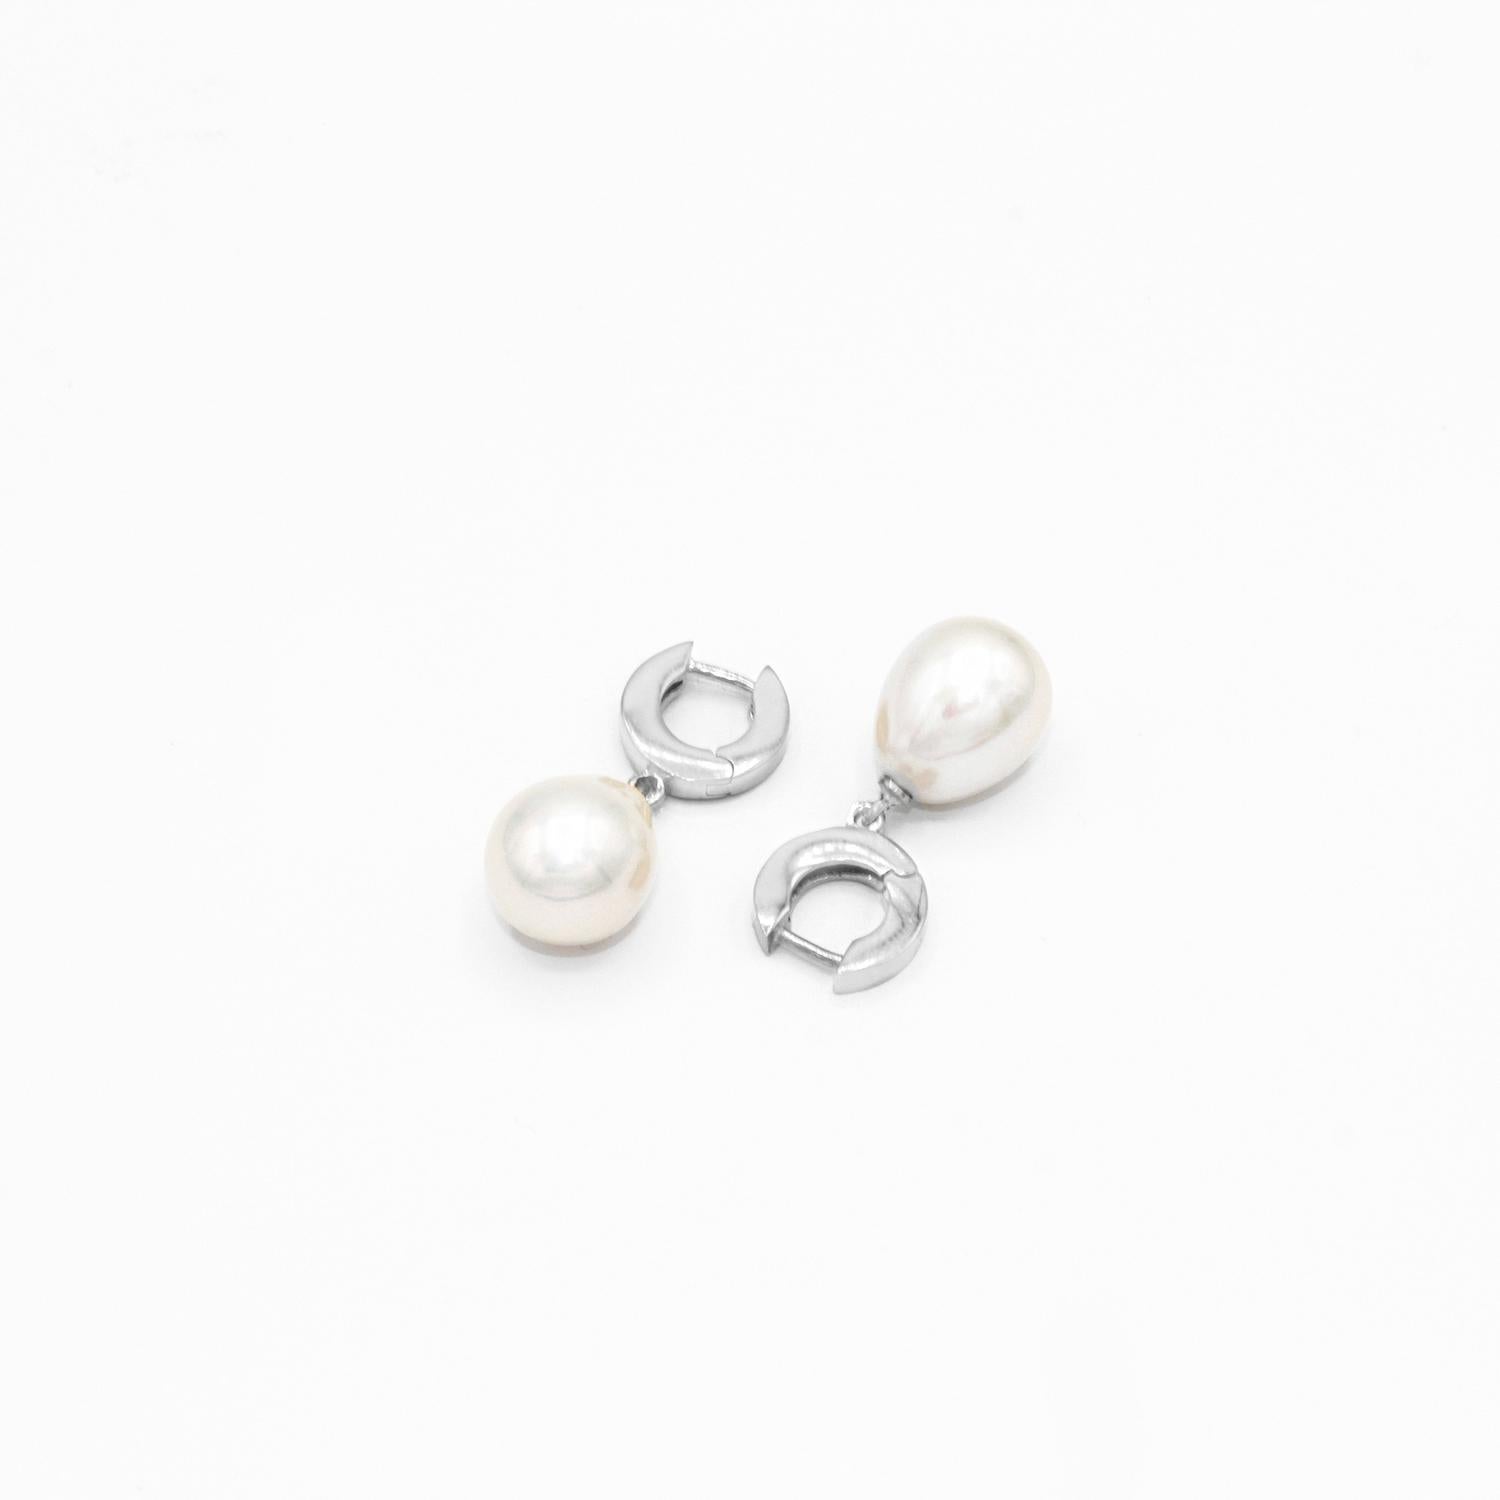 Uncut 925 Silver Elegant Dangle Earrings